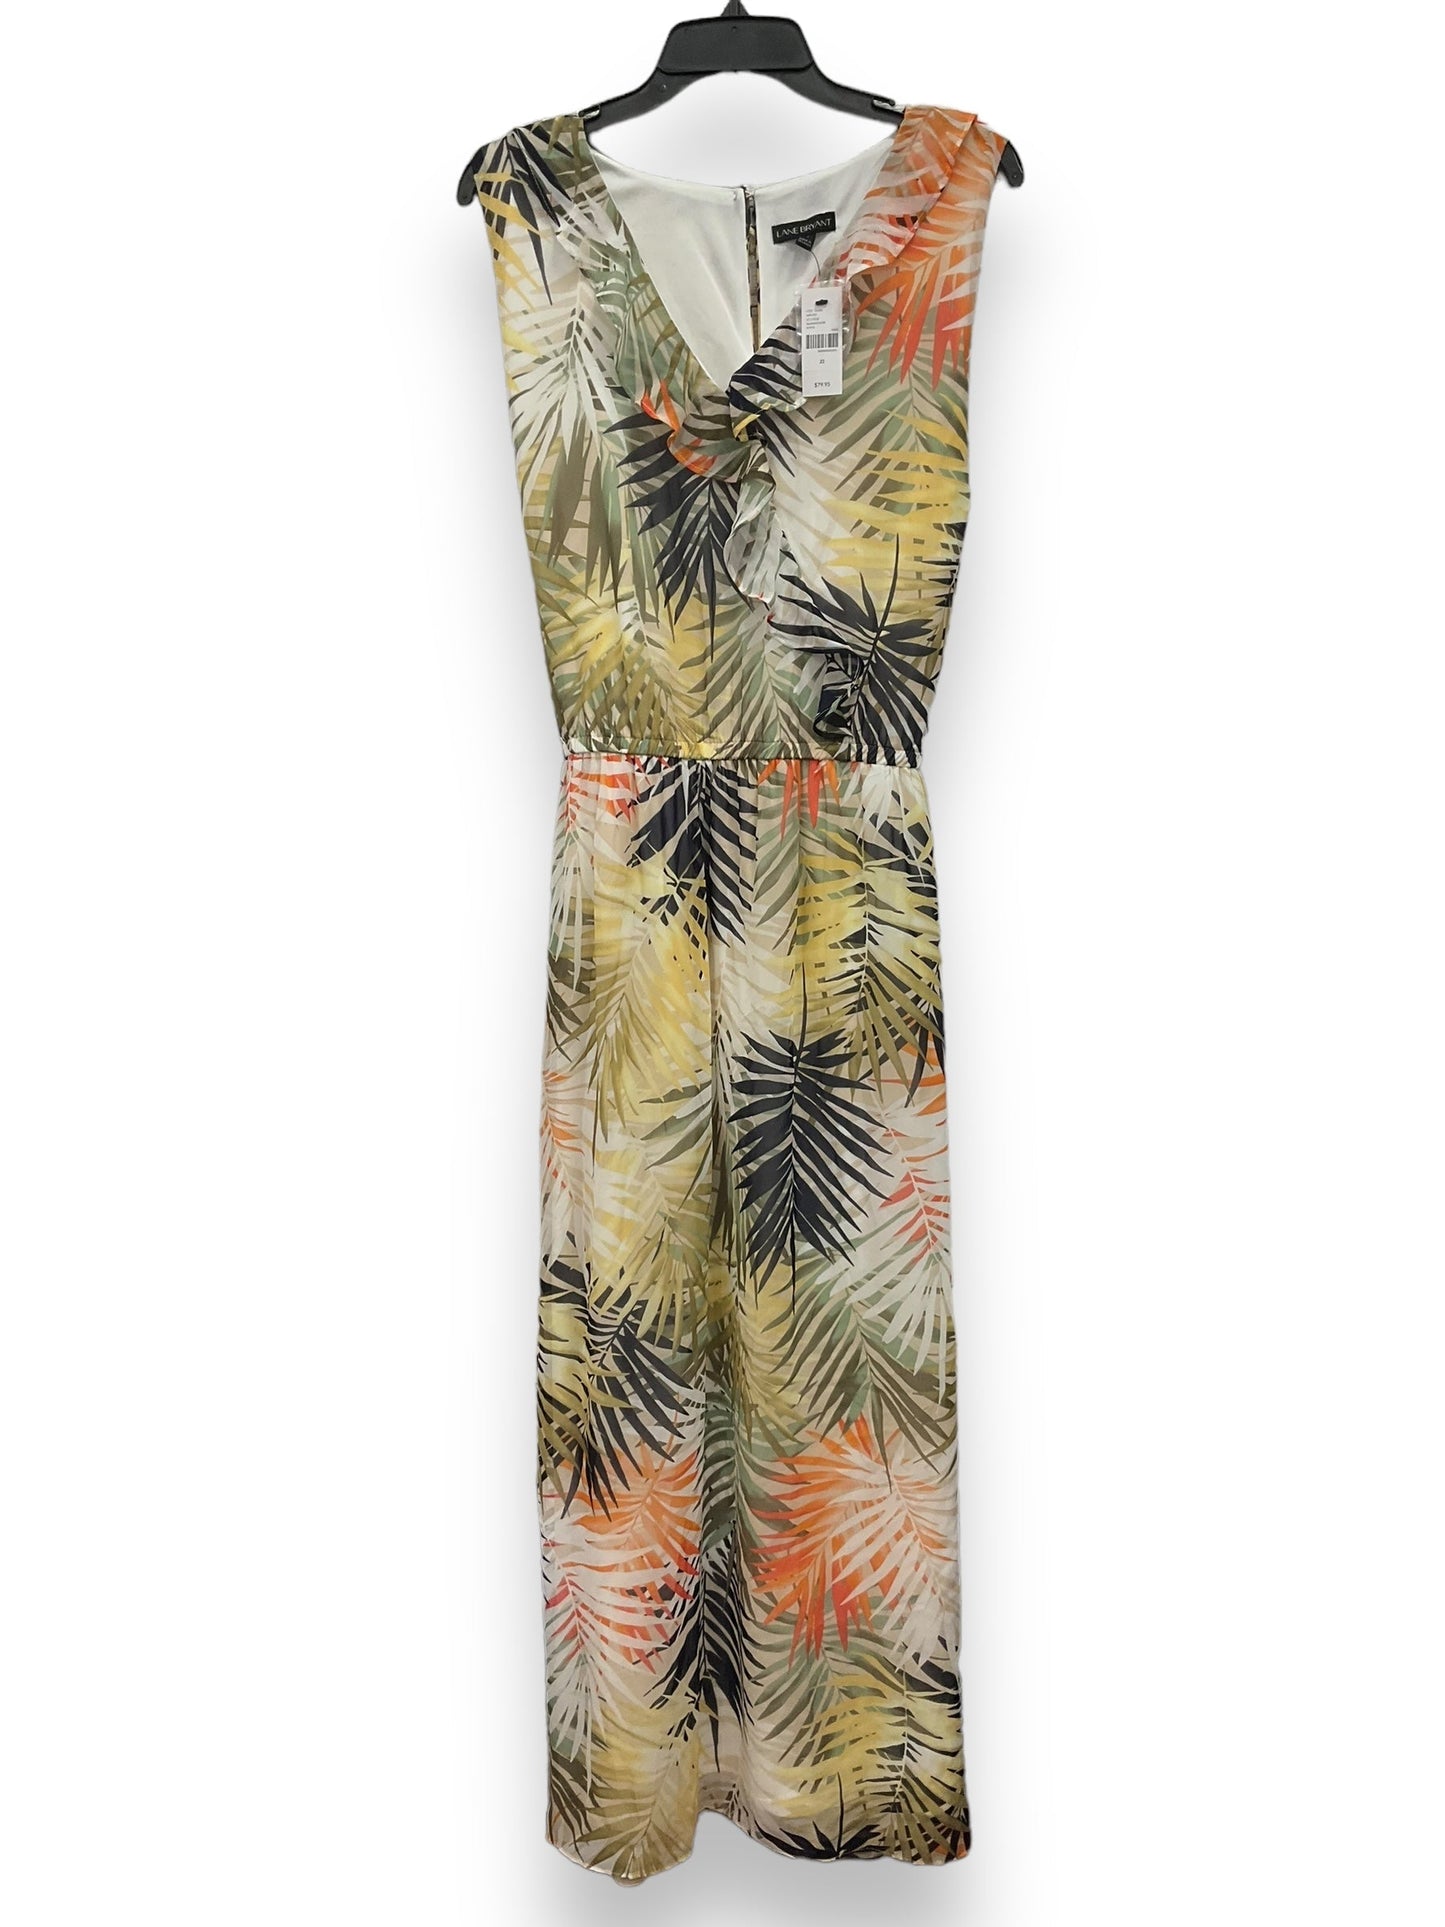 Tropical Print Dress Casual Maxi Lane Bryant, Size 2x